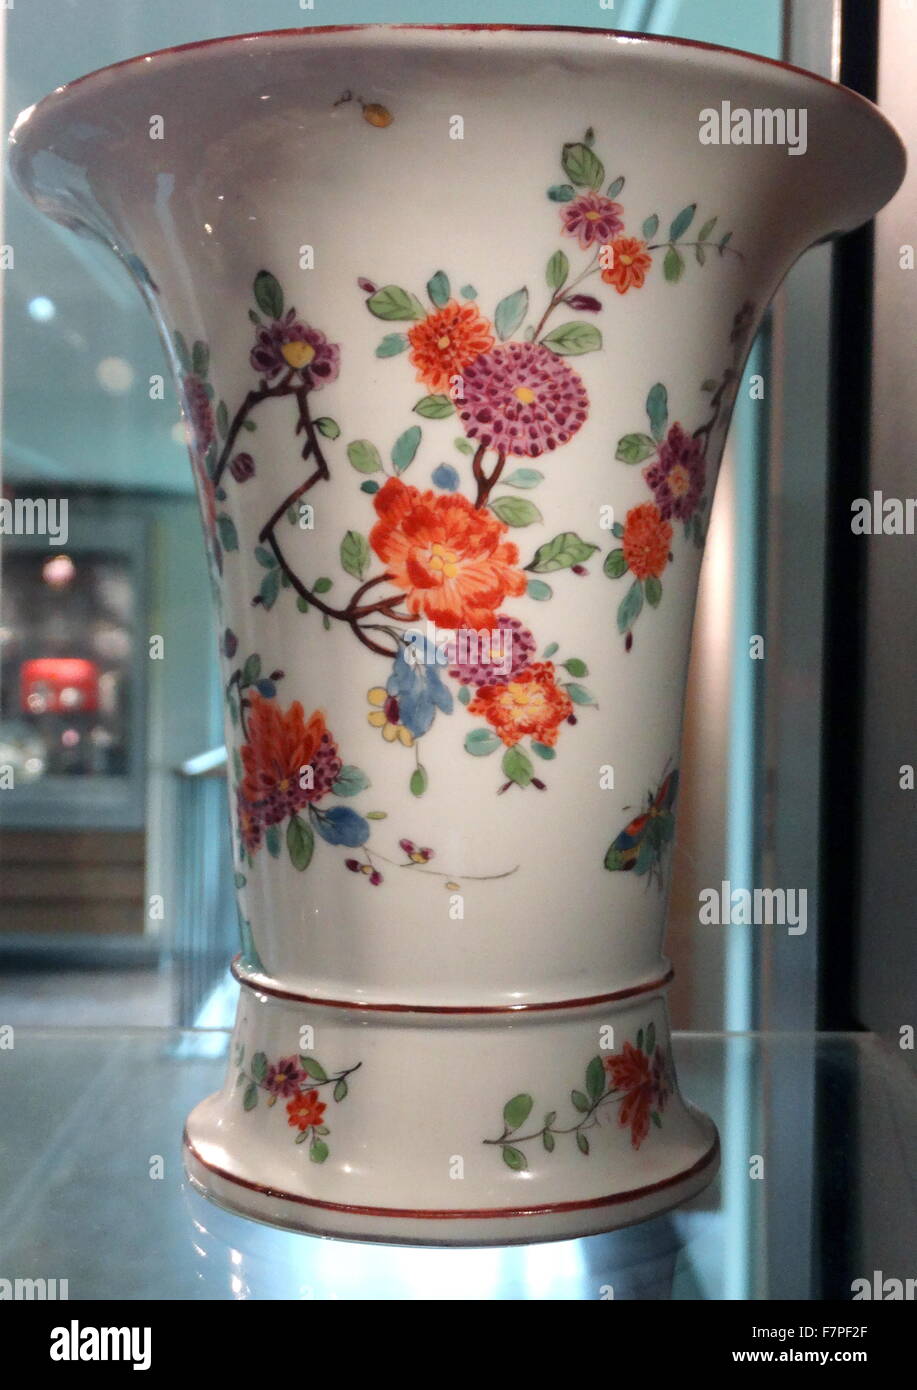 Vase allemand faite par l'usine de porcelaine de Meissen, Allemagne. Pâte à porcelaine, sur,1745 Banque D'Images